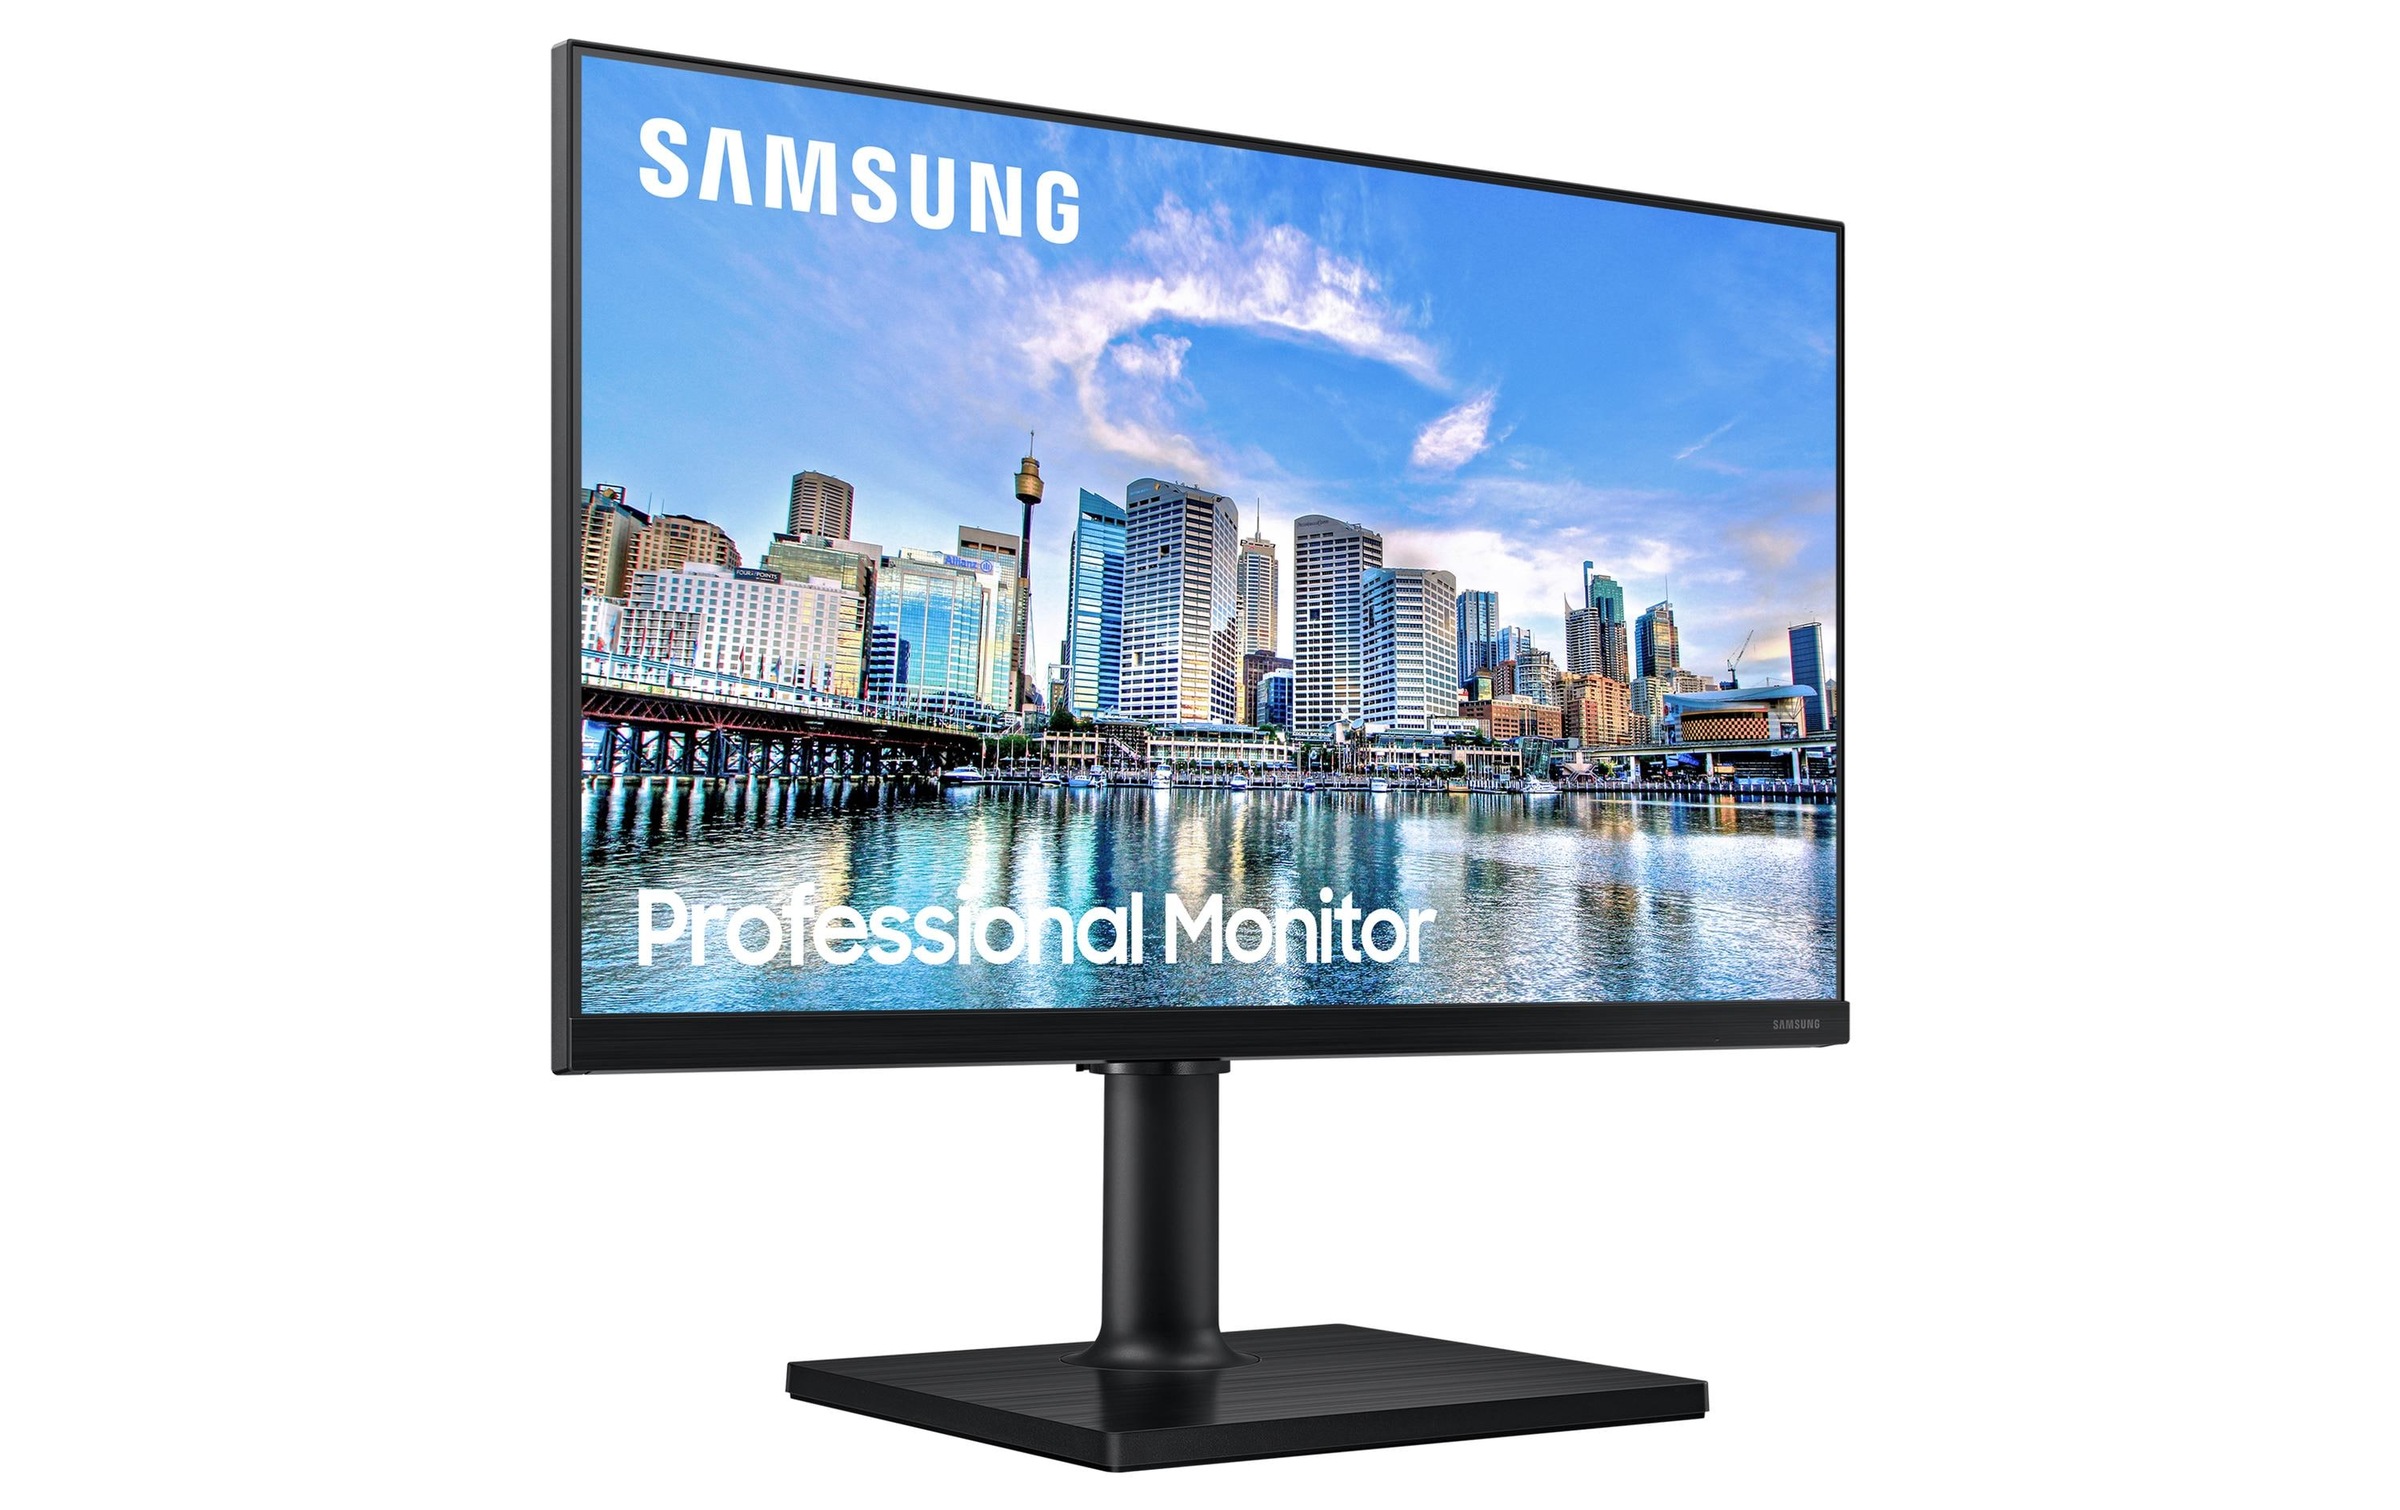 Samsung LED-Monitor »LF27T450FZUXEN«, 68,31 cm/27 Zoll, 1920 x 1080 px, Full HD, 5 ms Reaktionszeit